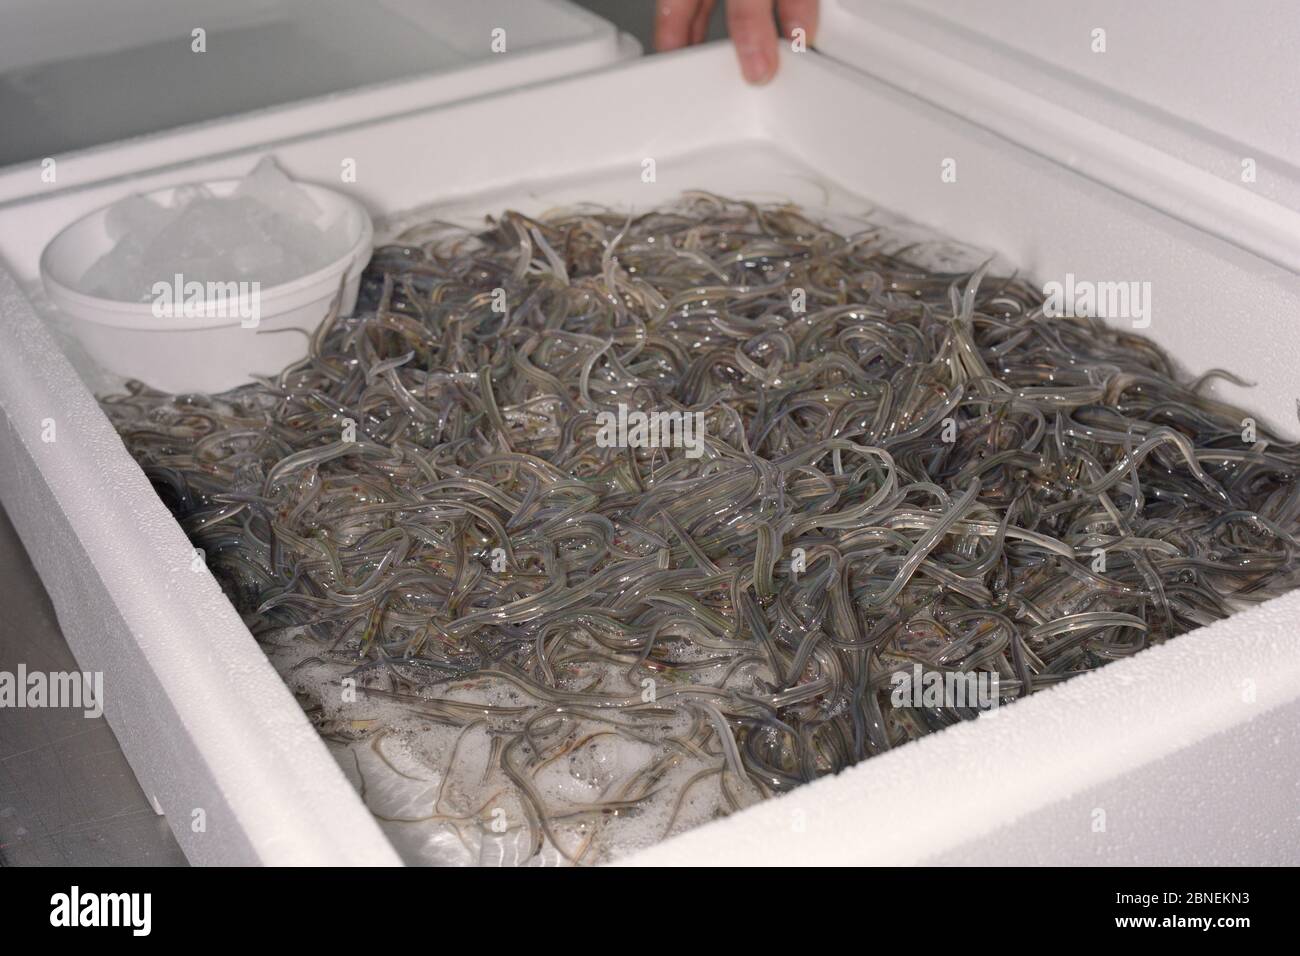 Glasaale, junge europäische Aale (Anguilla anguilla), die in einer isolierten Box mit Eis und Wasser bei UK Glasaale für den Transport nach Germ verpackt werden Stockfoto